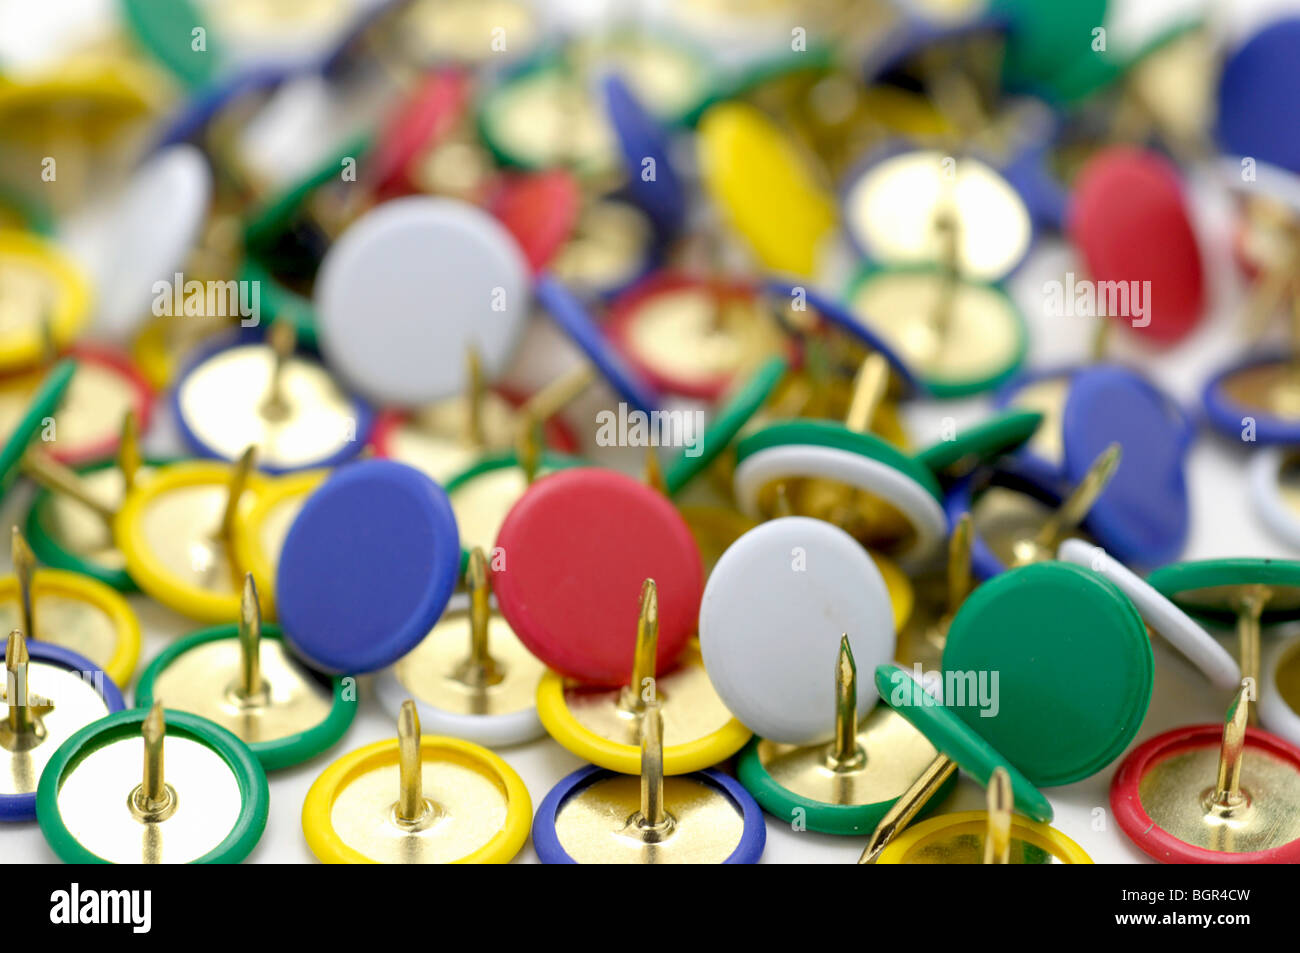 Thumb Tacks/ Push Pins Stock Photo